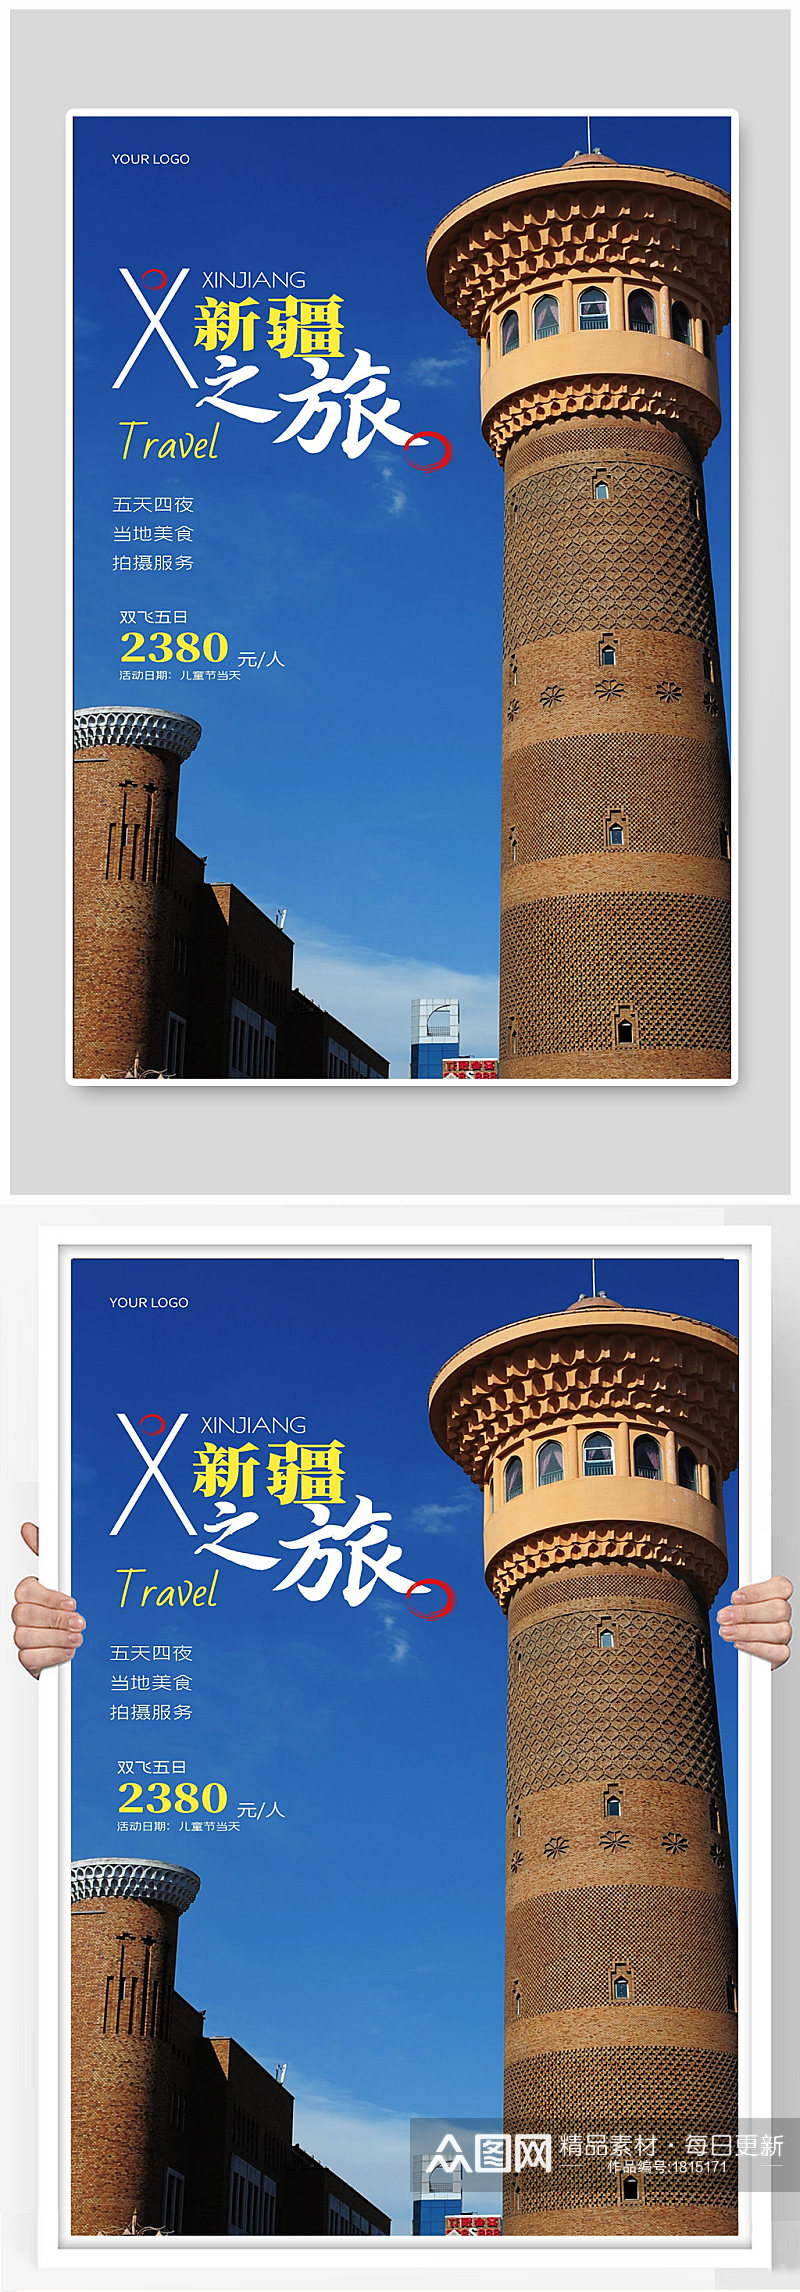 新疆之旅旅游宣传海报设计素材